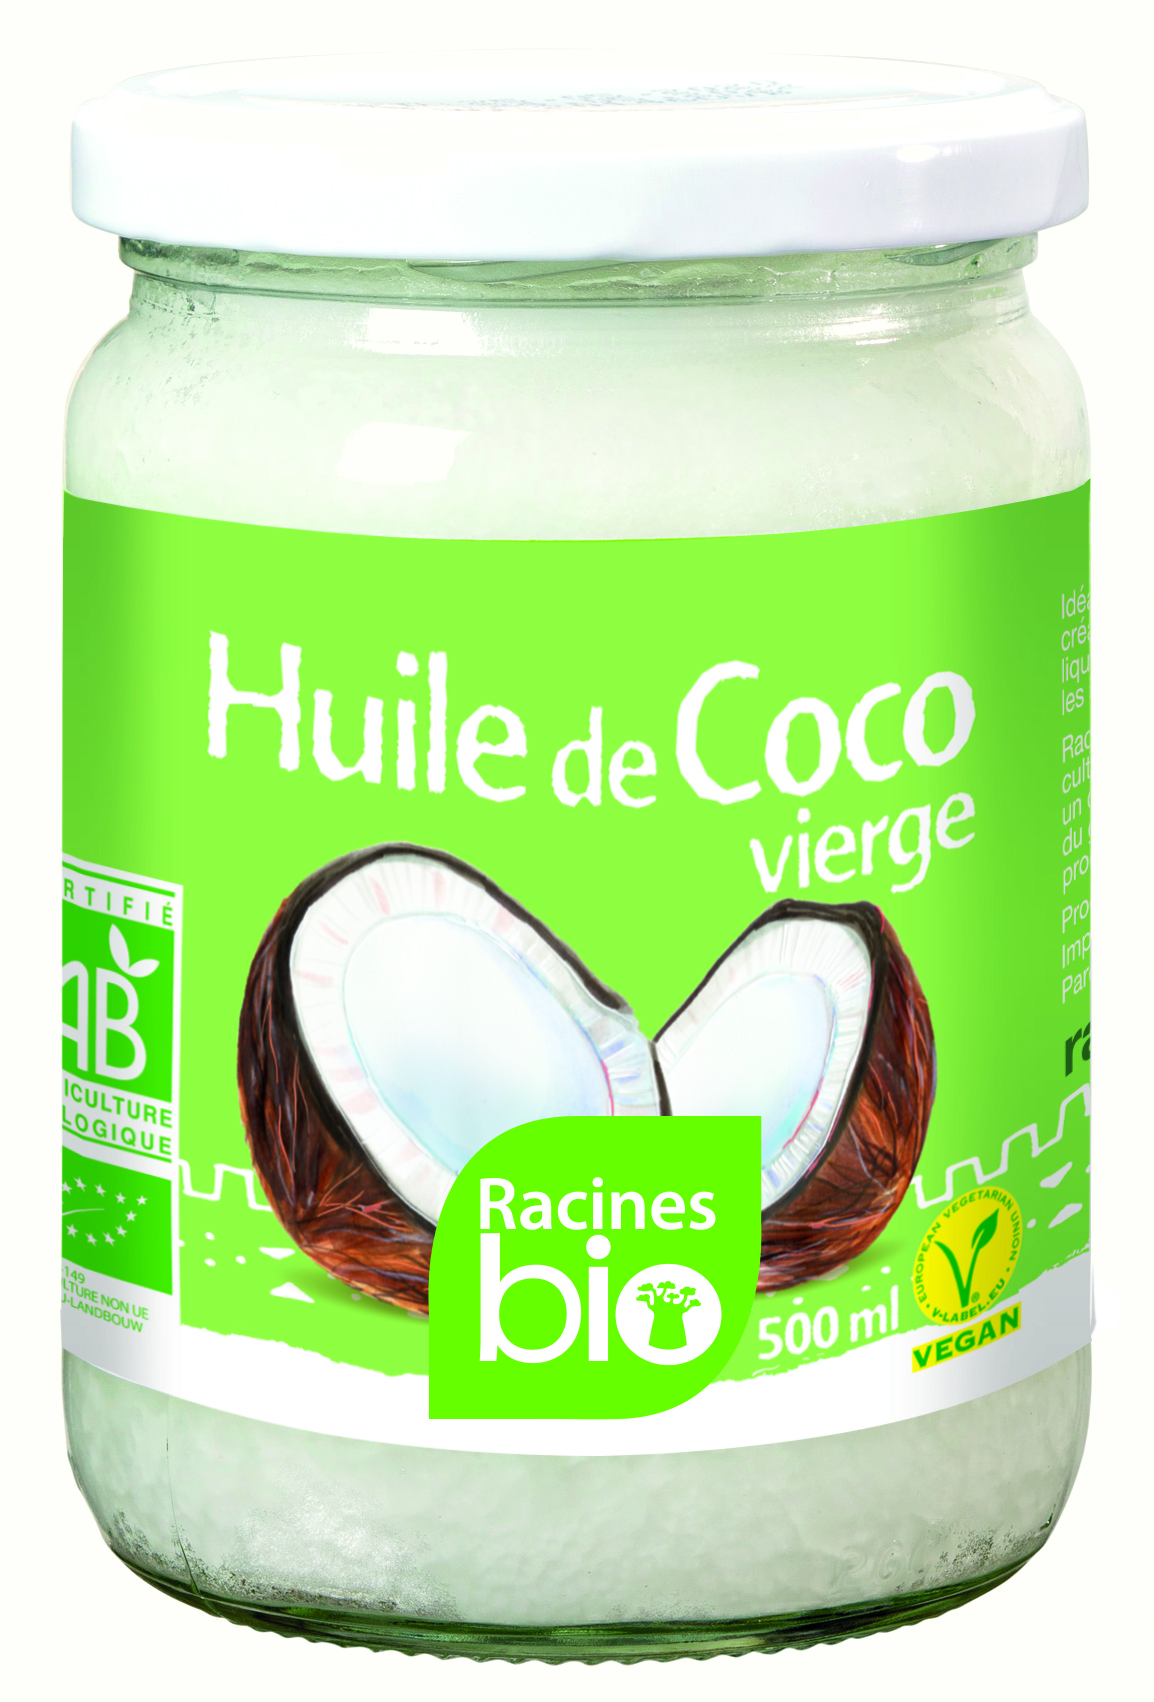 Maagdelijke kokosolie (12 x 500 ml) - Racines Bio